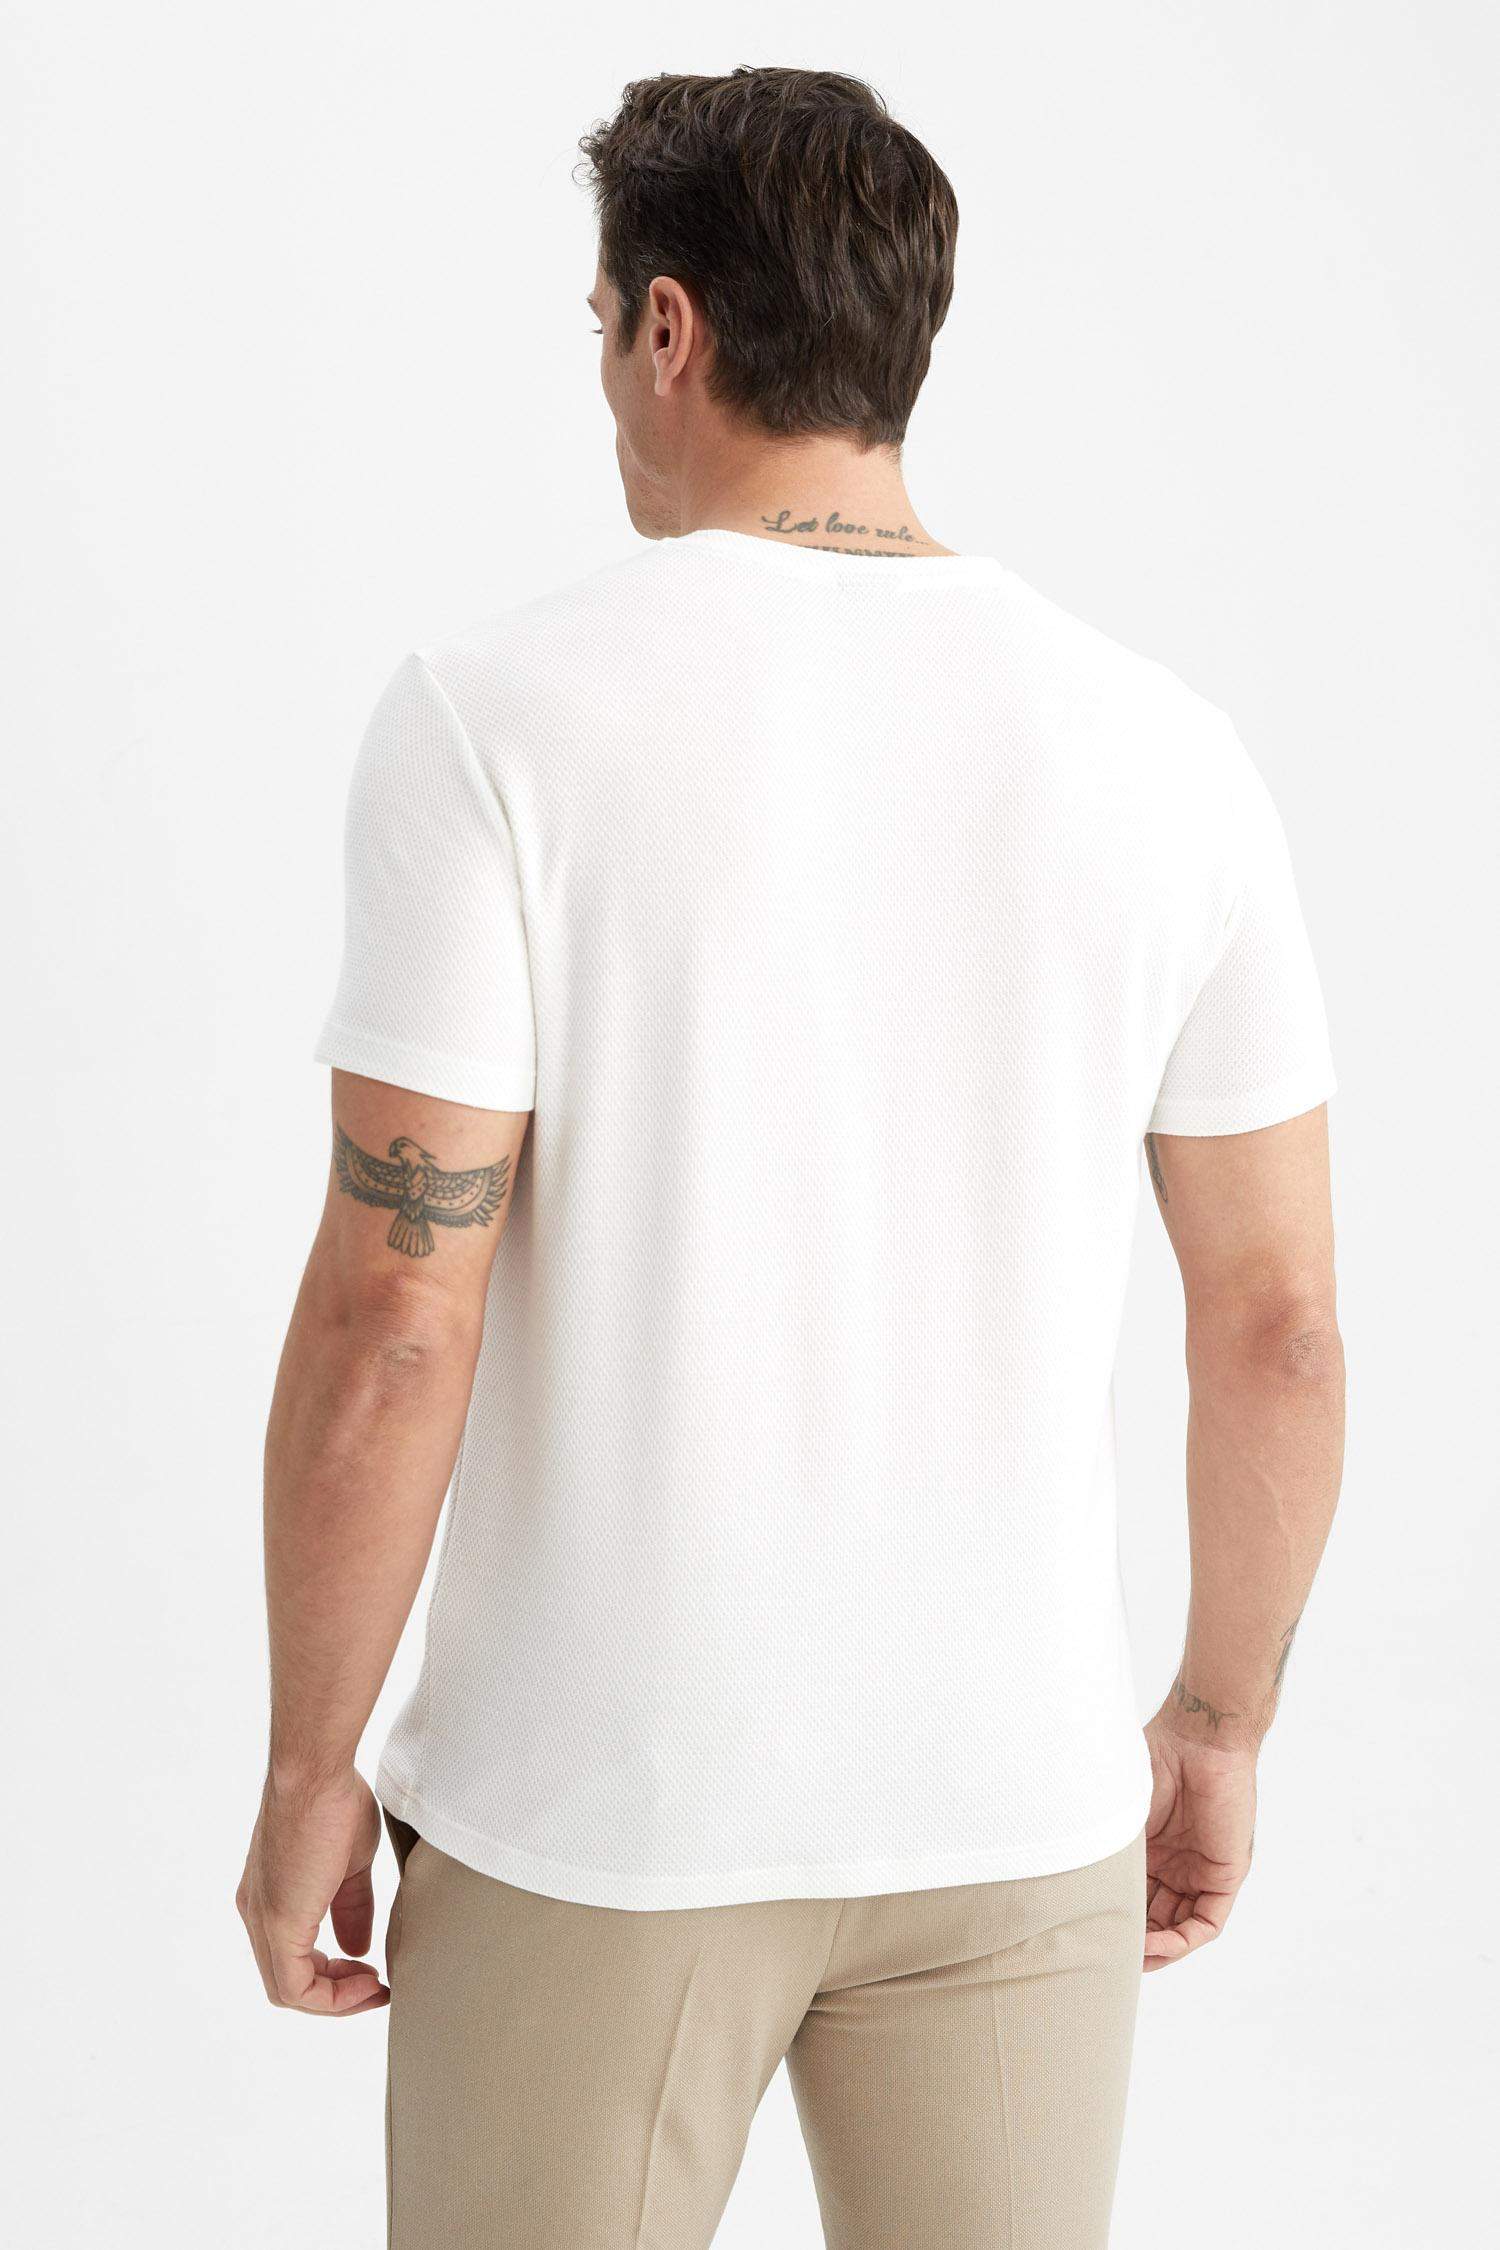 Tee-Shirt Col Rond Homme Blanc – La Marque 42 / Pomme De Pin